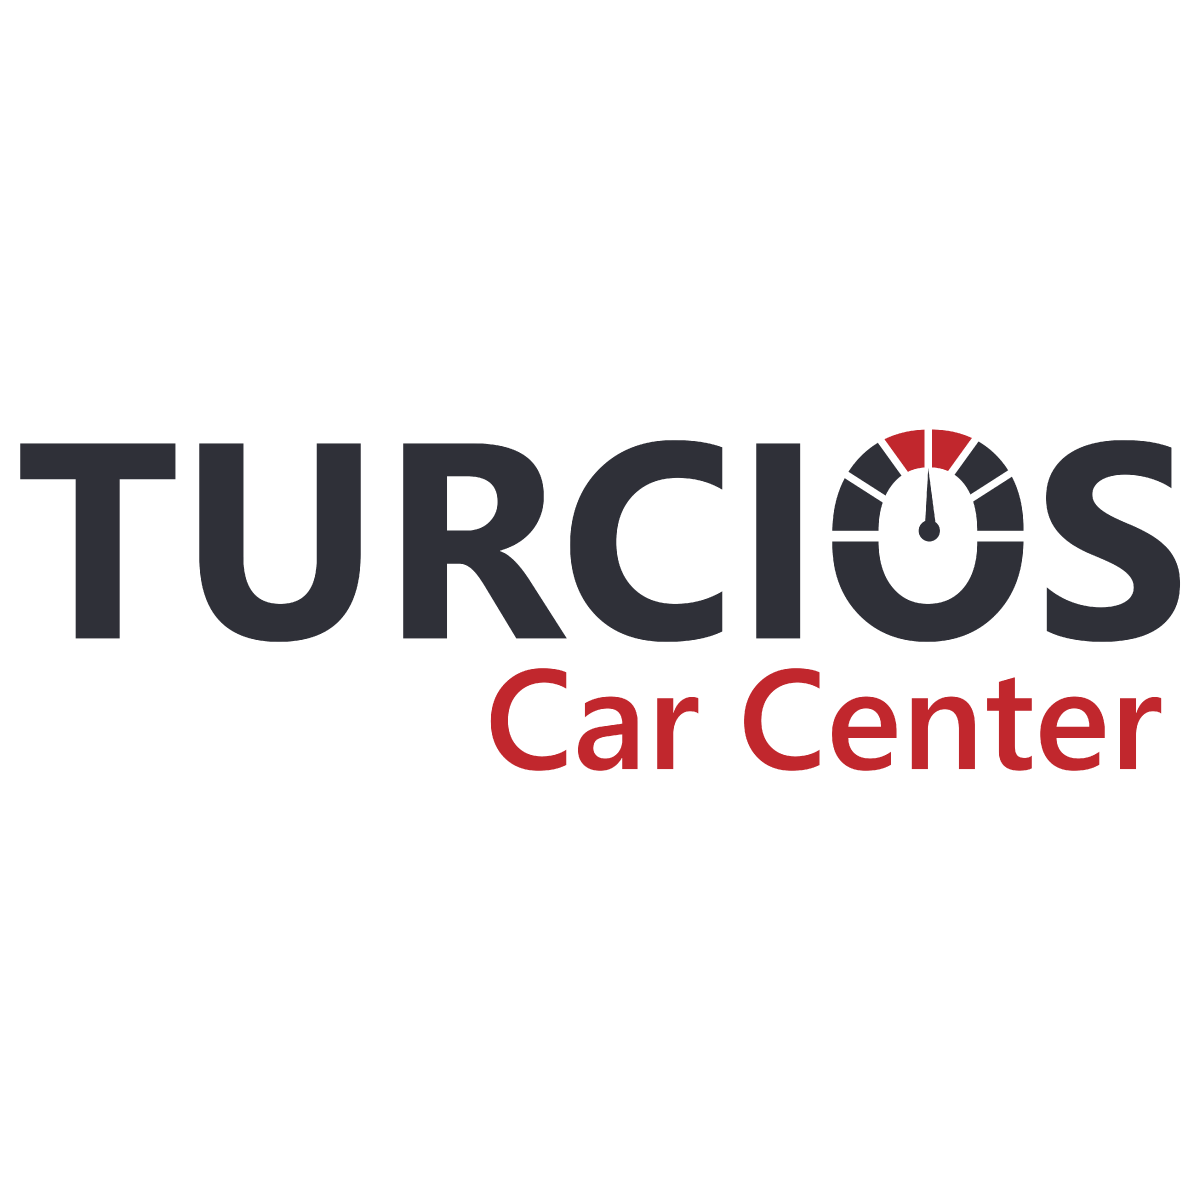 TURCIOS CAR CENTER